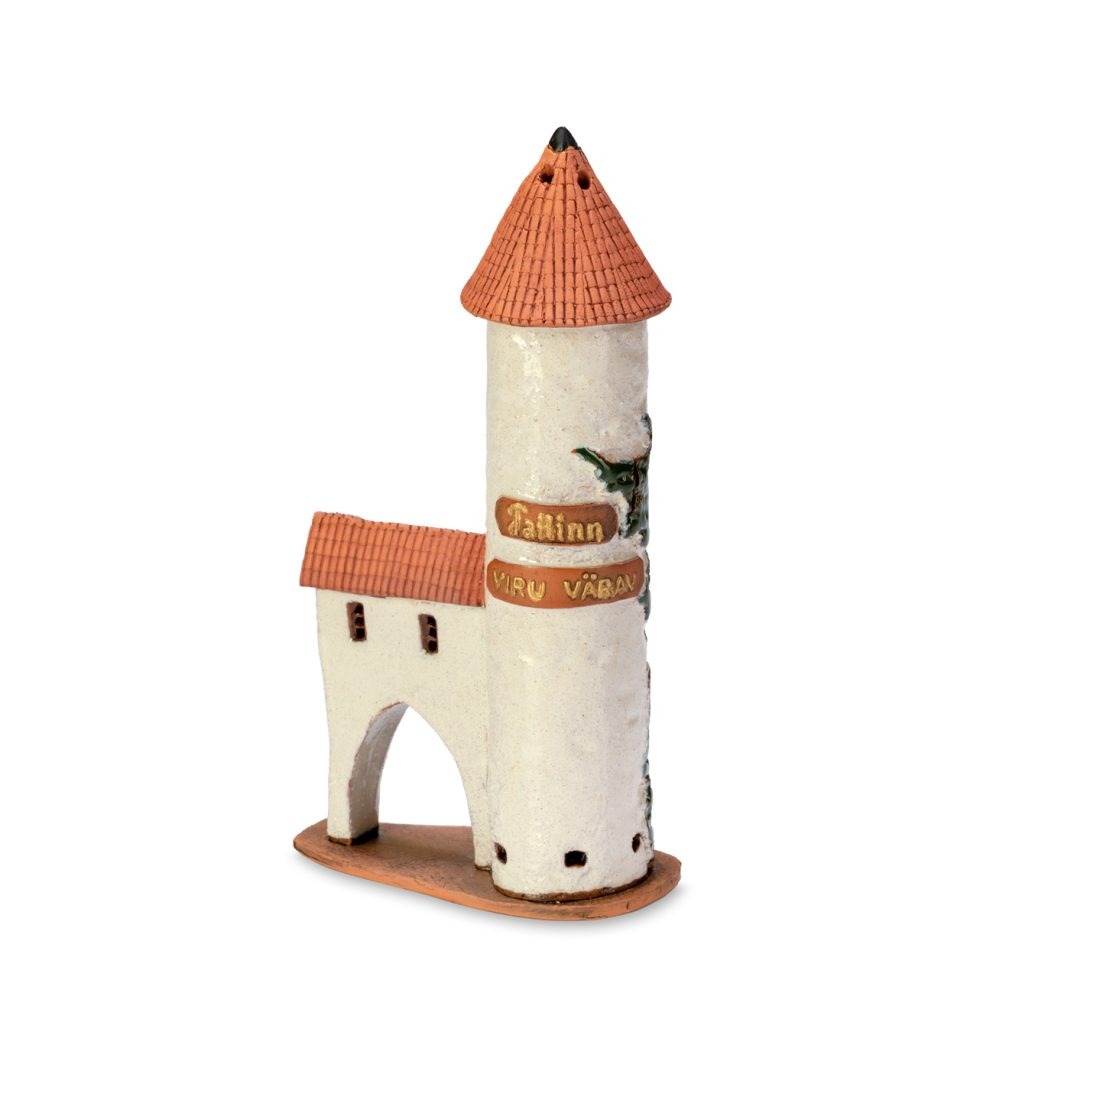 Handgemachte keramische Miniatur, originalgetreue Kopie eines Gebäudes in Tallinn TALL 09